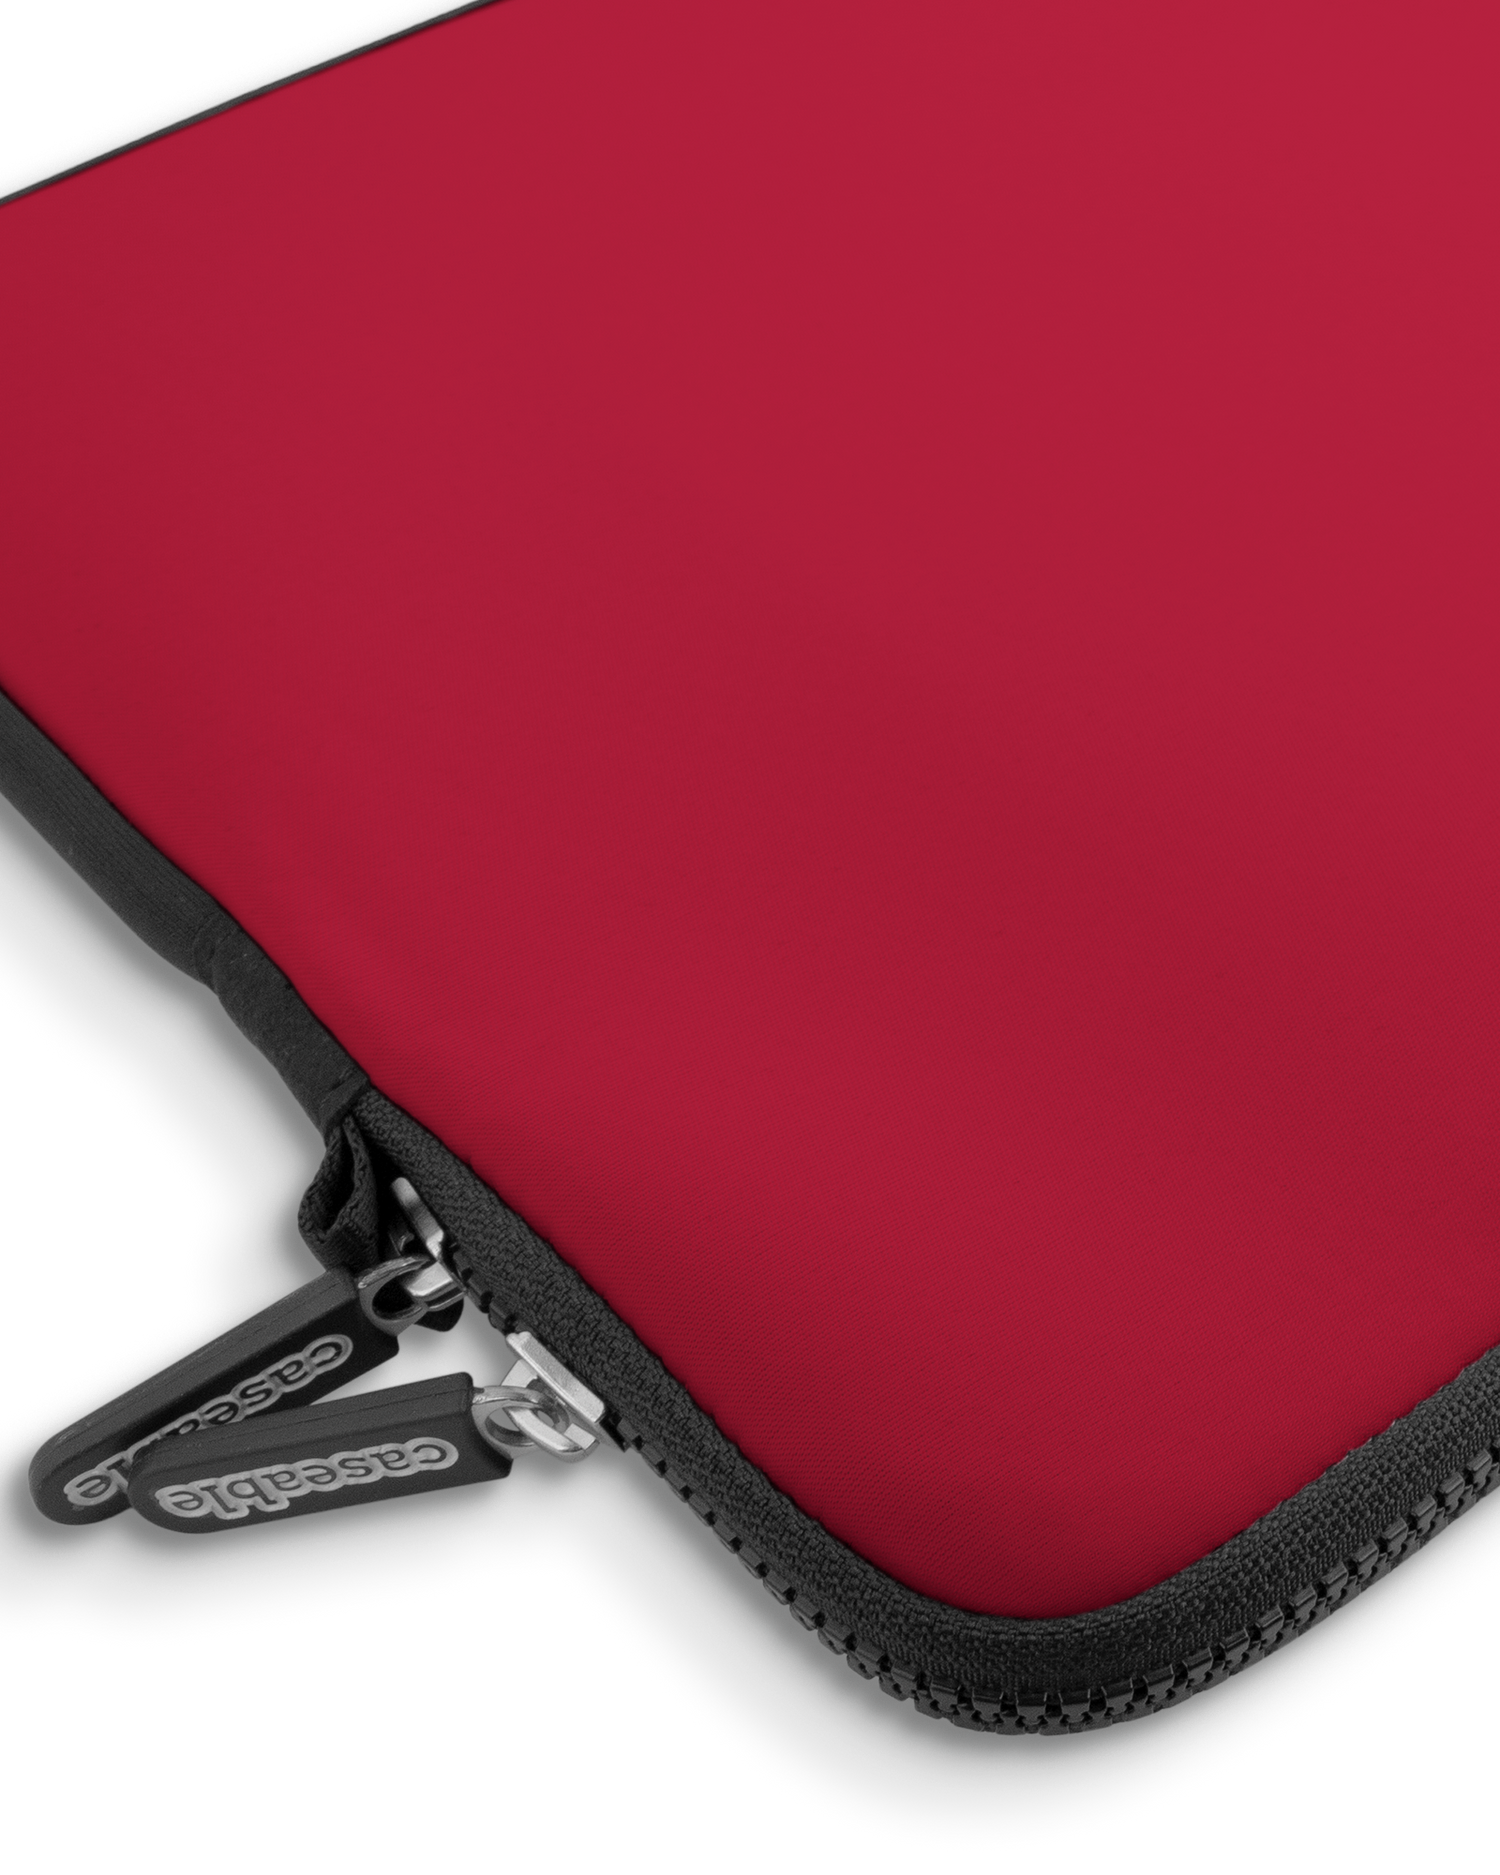 RED Premium Laptoptasche 15 Zoll mit Gerät im Inneren